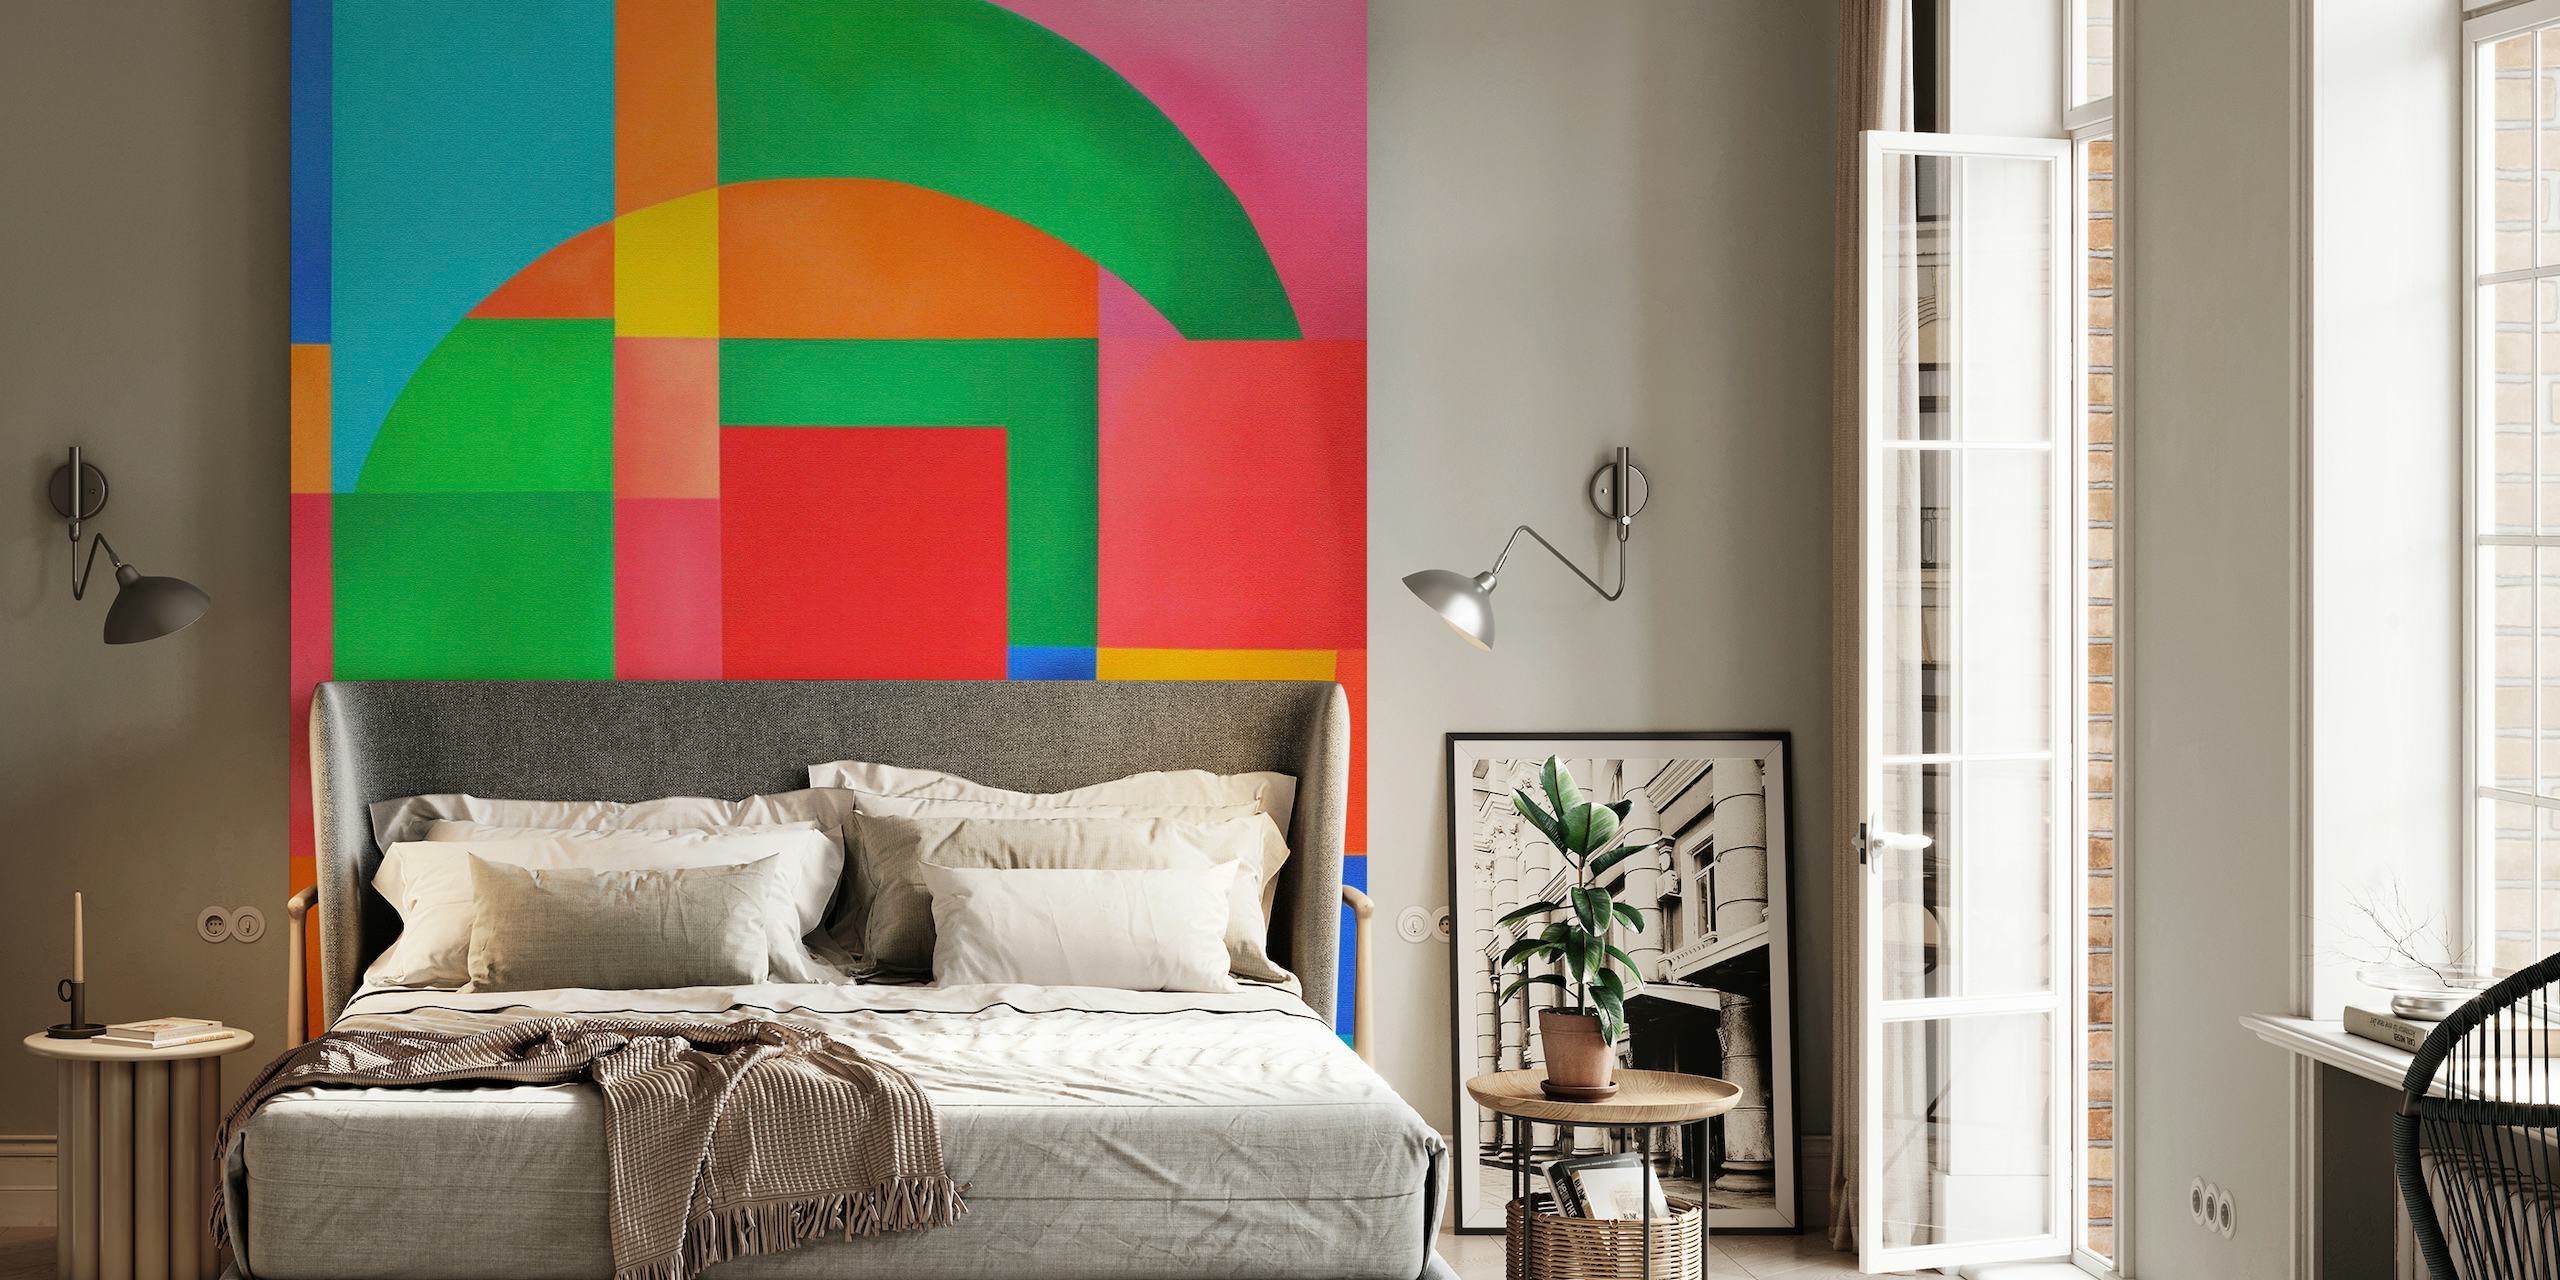 Fotomural vinílico de parede com formas geométricas coloridas e design retro